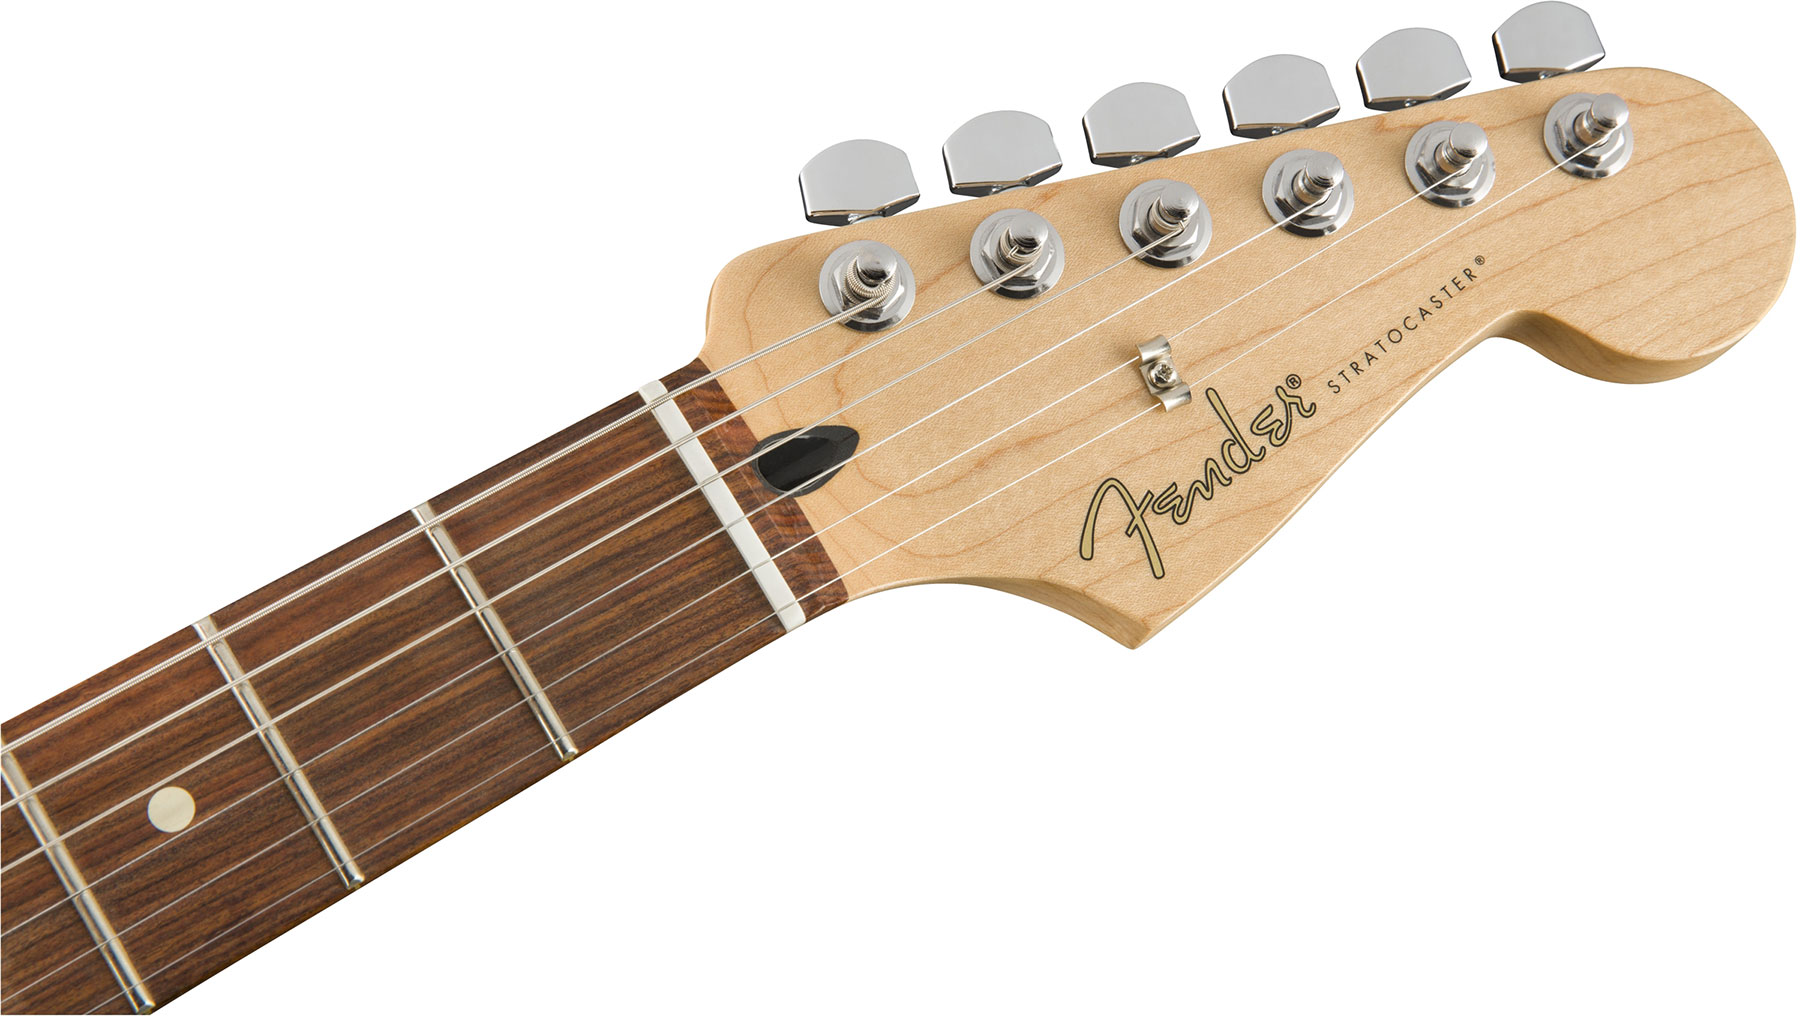 Fender Strat Player Plus Top Mex 3s Trem Pf - Tobacco Burst - Elektrische gitaar in Str-vorm - Variation 2